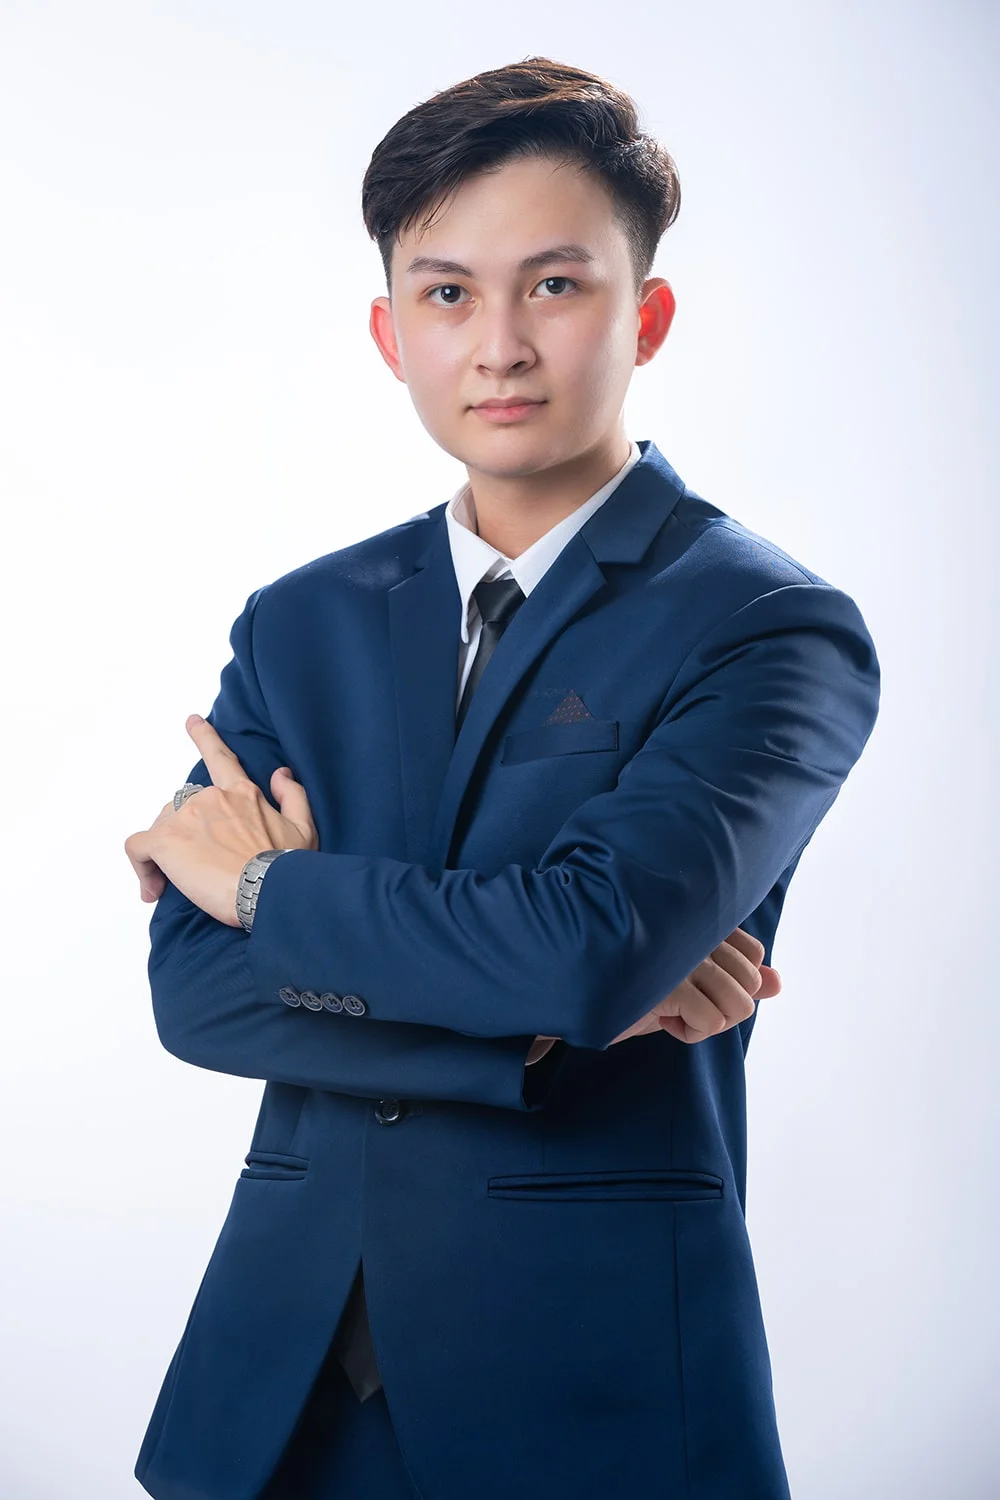 Anh profile 1 4 - Dịch vụ chụp ảnh CV đẹp, chuyên nghiệp tại Tp.HCM - HThao Studio